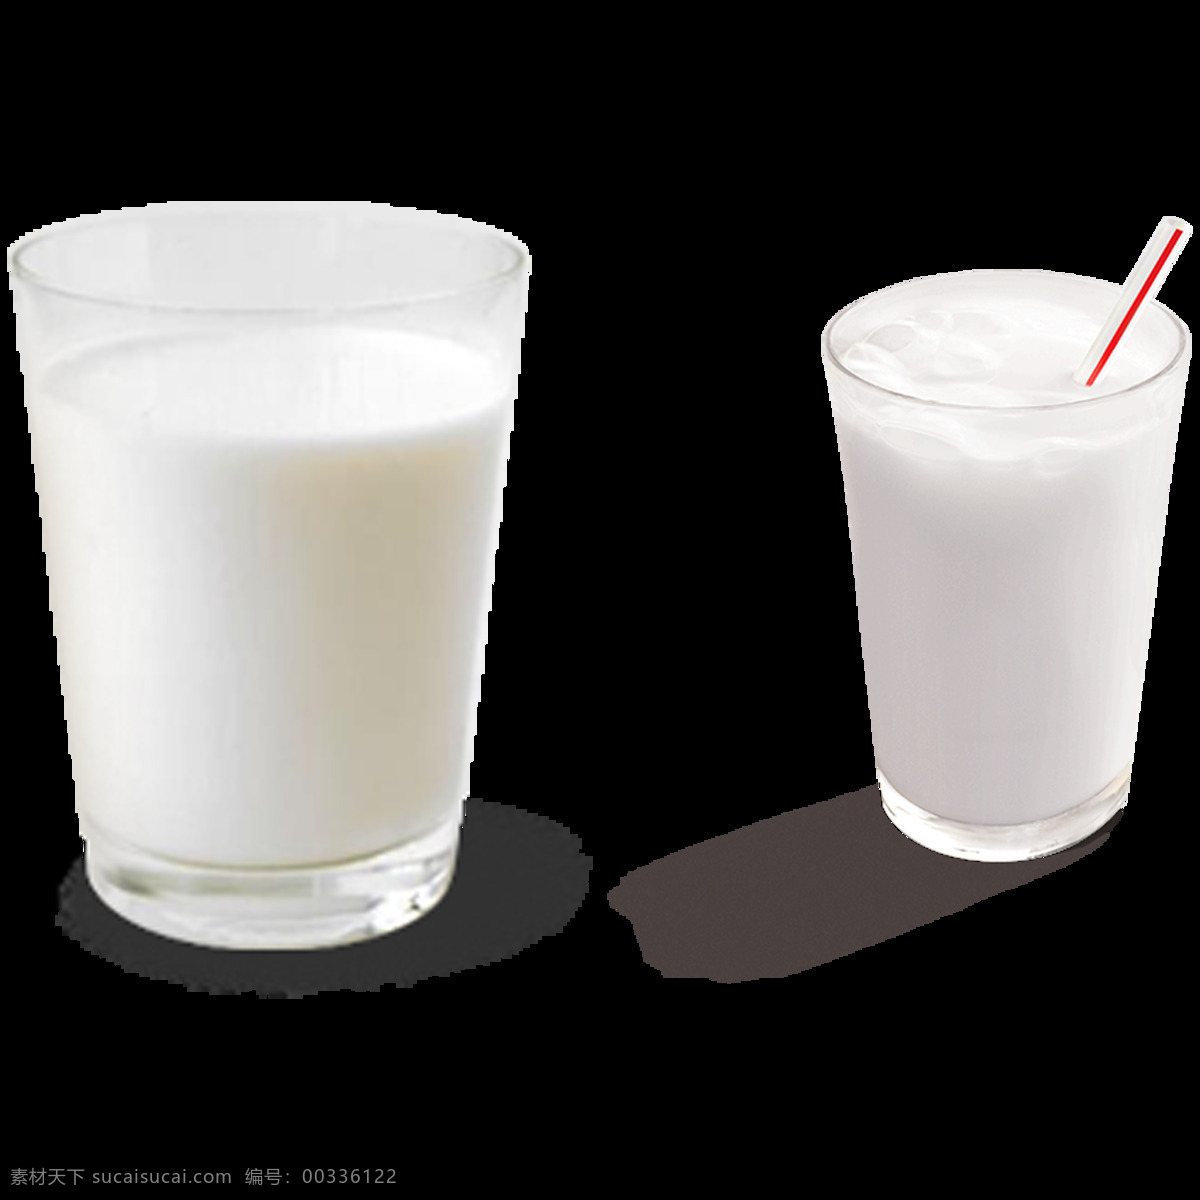 两 杯 牛奶 免 抠 透明 图 层 牛奶飞溅 一杯牛奶 盒装牛奶 一瓶牛奶 牛奶喷溅素材 牛奶矢量图 鲜牛奶 牛奶卡通图片 热牛奶 原味牛奶 发酵酸奶 瓶装牛奶 牛奶图片